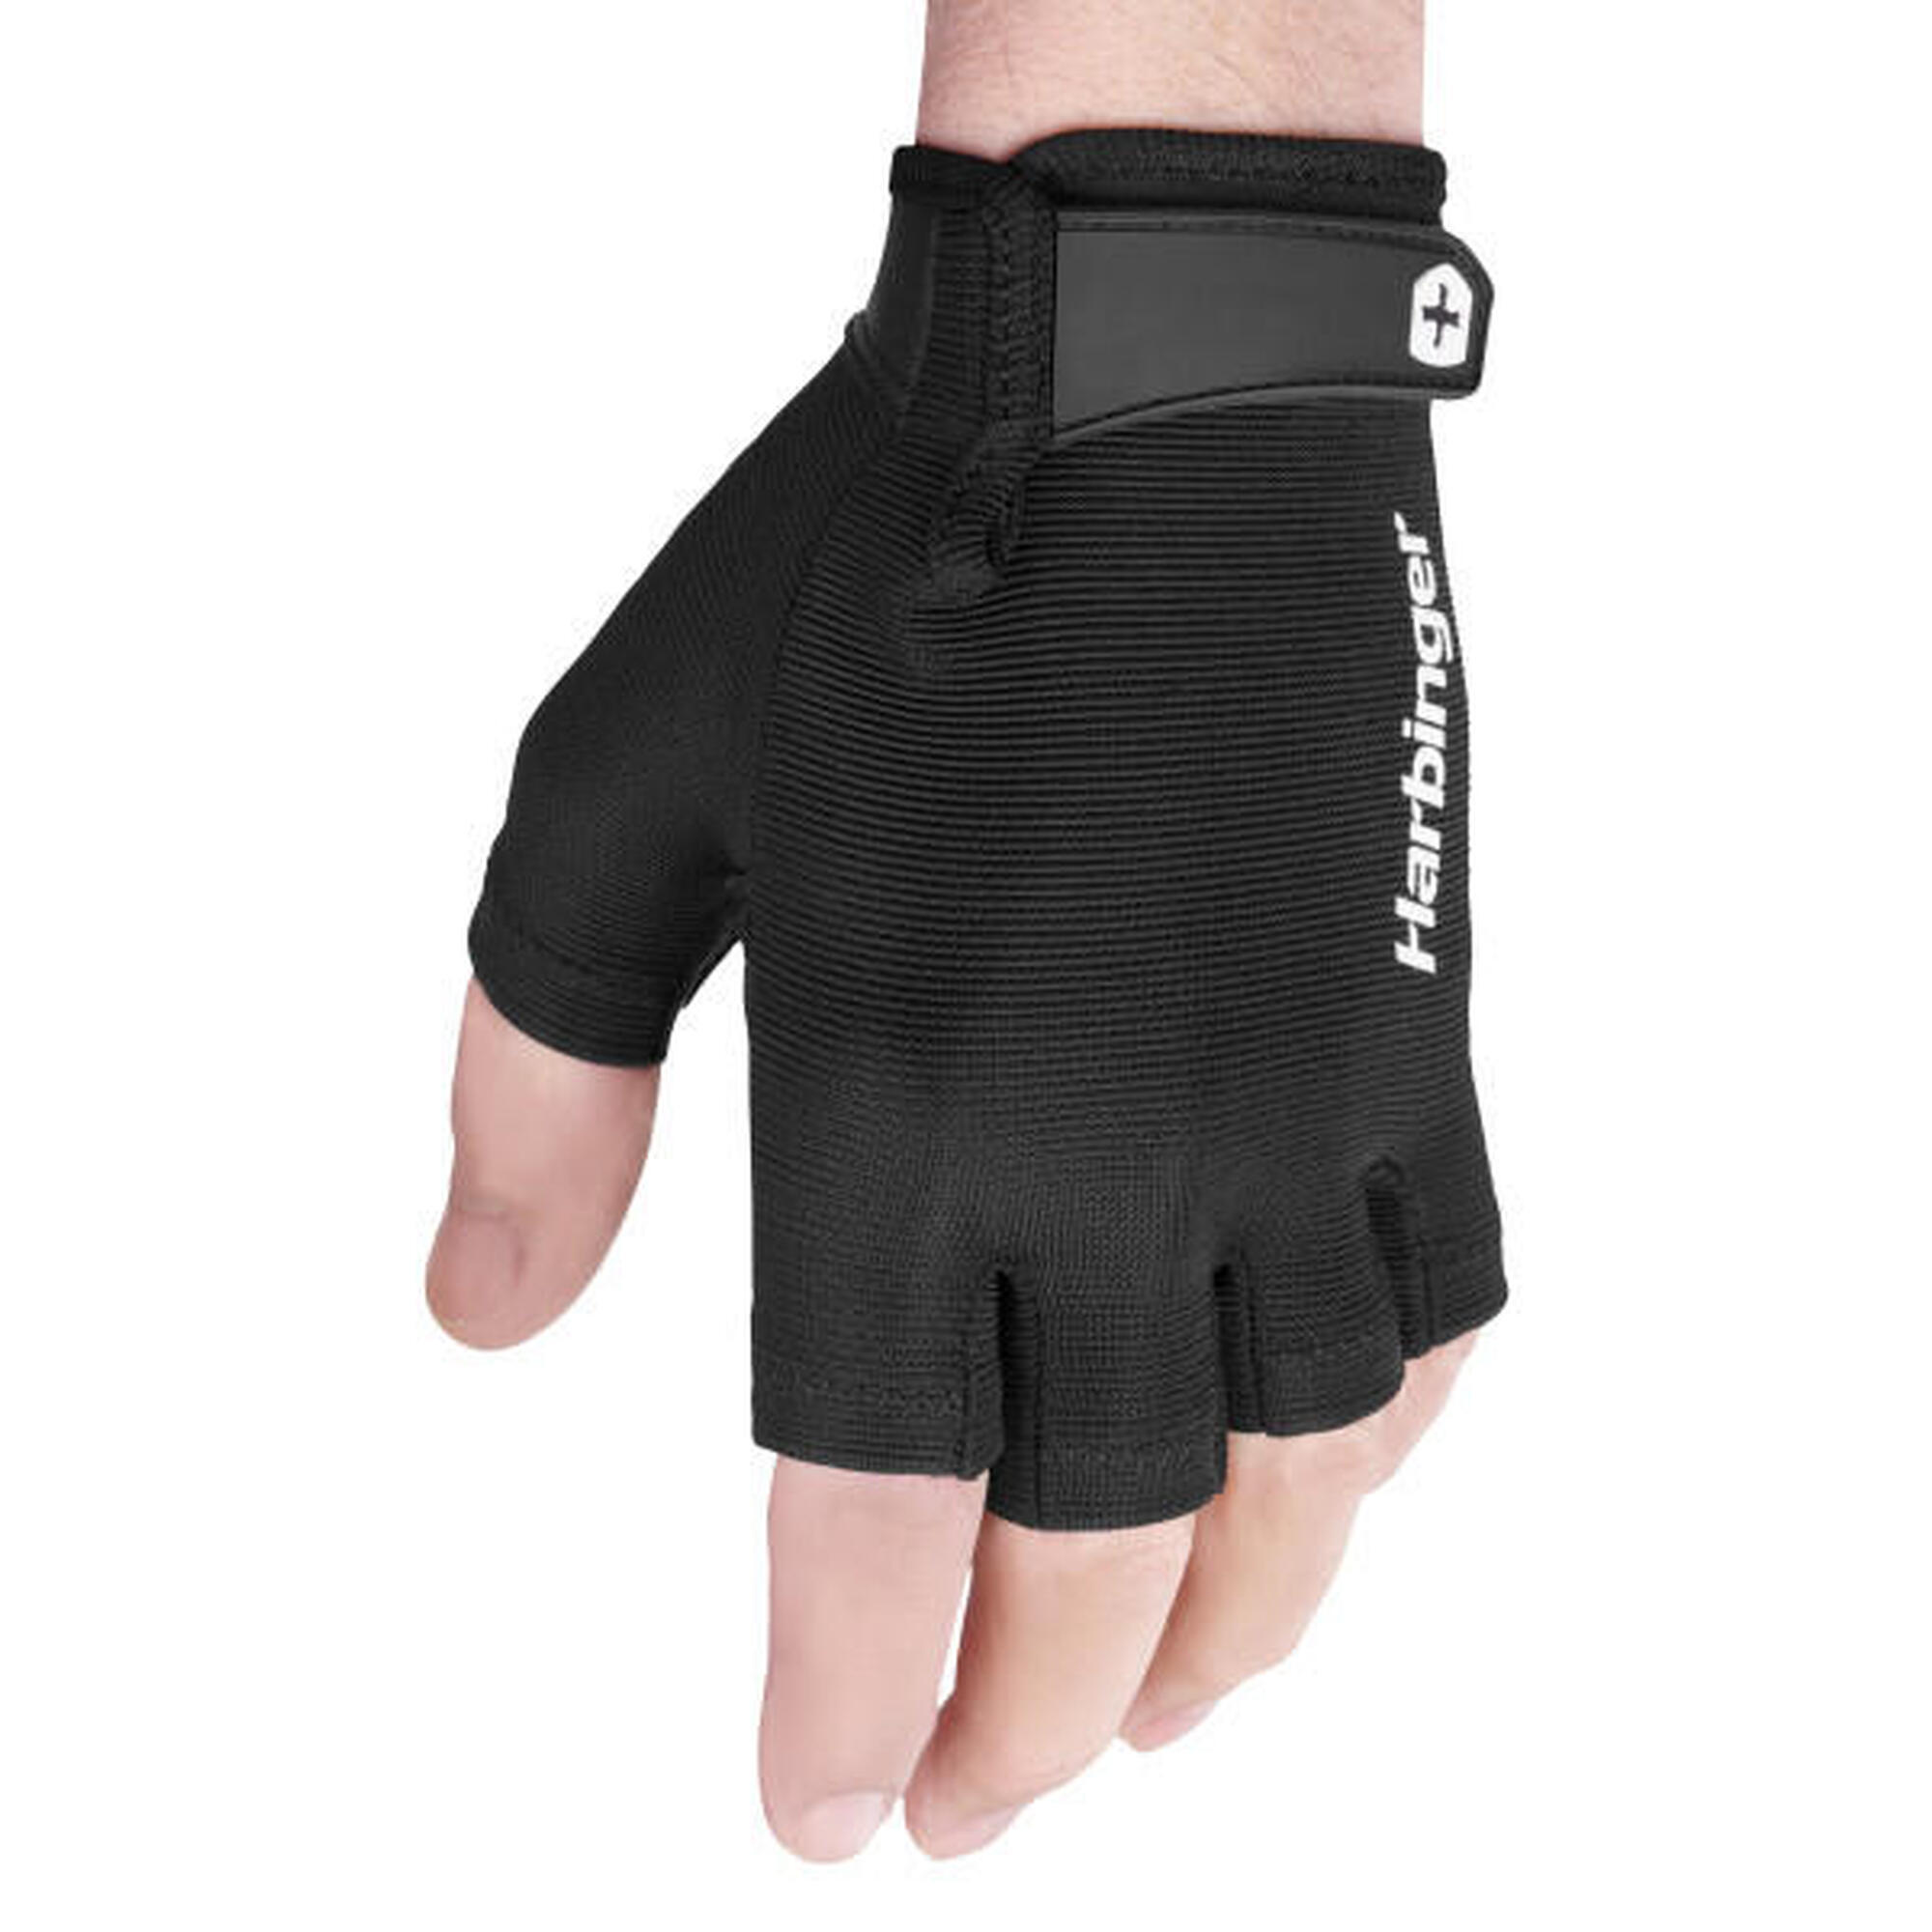 Harbinger Power Gloves : adhérence ferme, soutien et confort avec paume en cuir